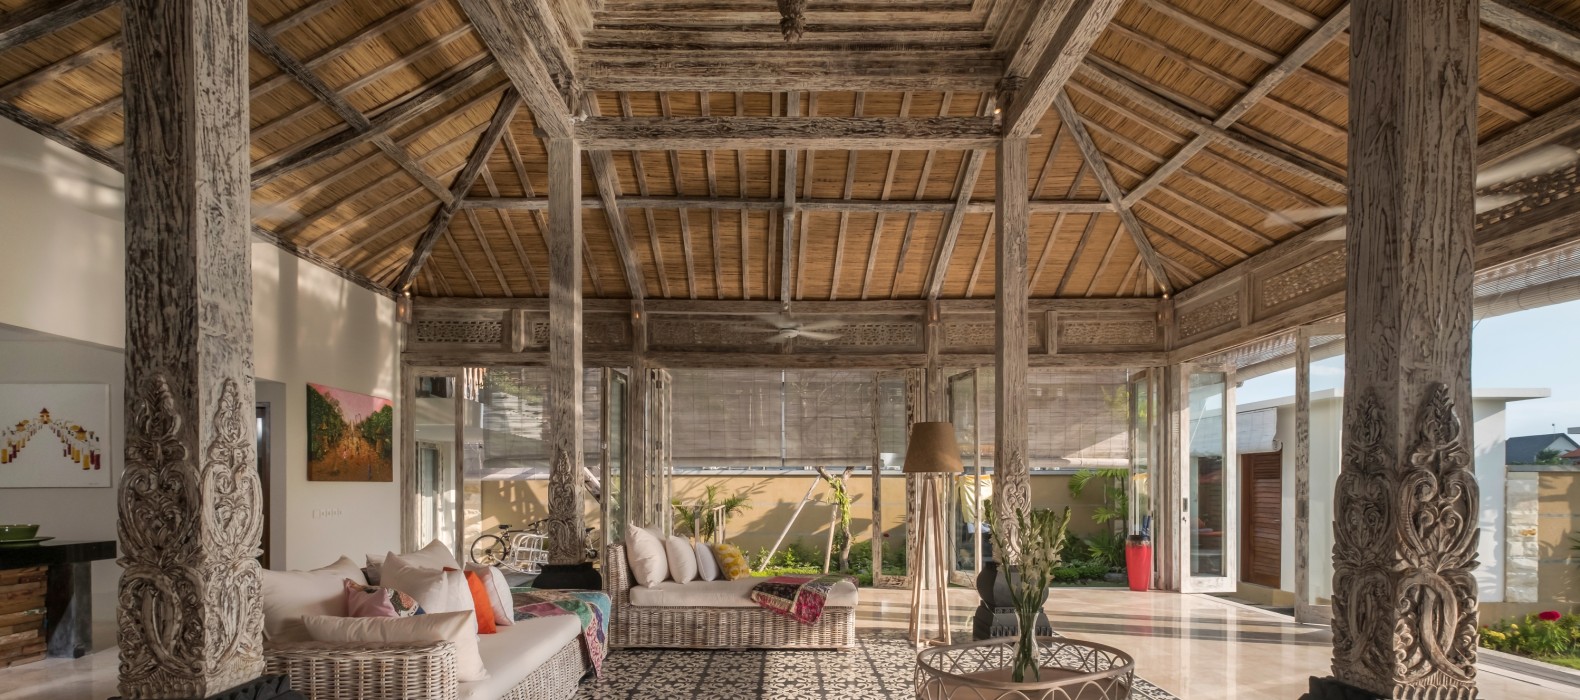 Living room of Villa Mambo in Bali